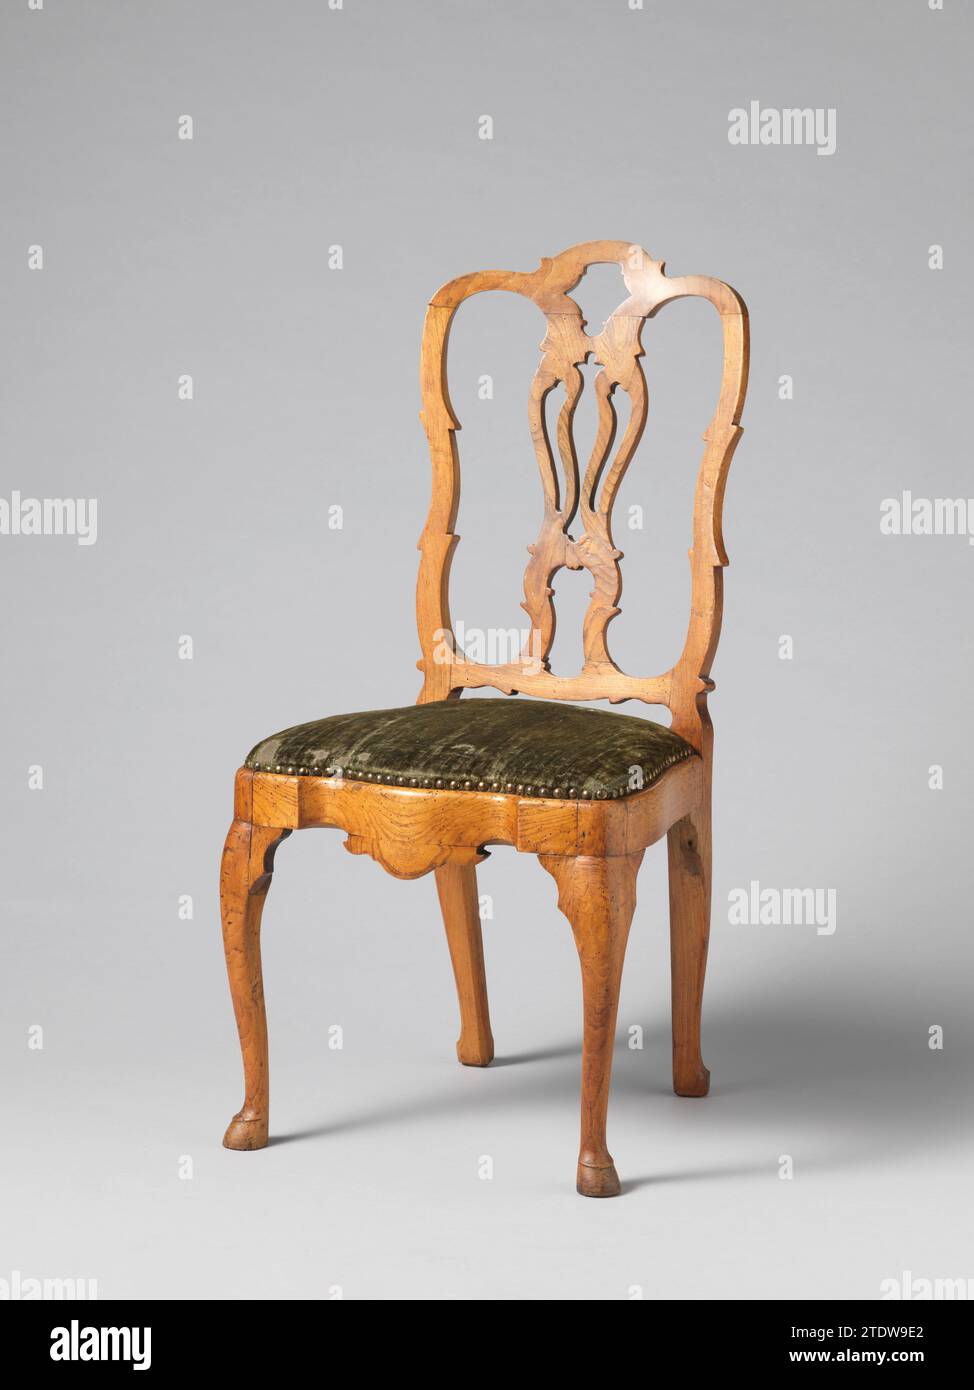 Chaise avec pressage de velours pressé avec un motif d'une tête d'homme louée, anonyme, 1785 - 1800 chaise d'acajou, recouverte de velours vert pressé, dans le dos avec un motif d'un médaillon entouré de vignes de feuilles, couronné par une guirlande. Dans le médaillon, une tête d'homme de profil. Les pattes carrées se rajeunirent ; les pattes postérieures sont en arrière. La pré-règle est courbée entre les pièces d'angle droit et, ainsi que le seuil supérieur, sous une guirlande, a une tête d'homme louée. Les seuils du dos trapézoïdal sont faiblement cornés. Pays-Bas septentrionaux Bois des pays-Bas (matériel végétal). acajou (bois). Chaise o Banque D'Images